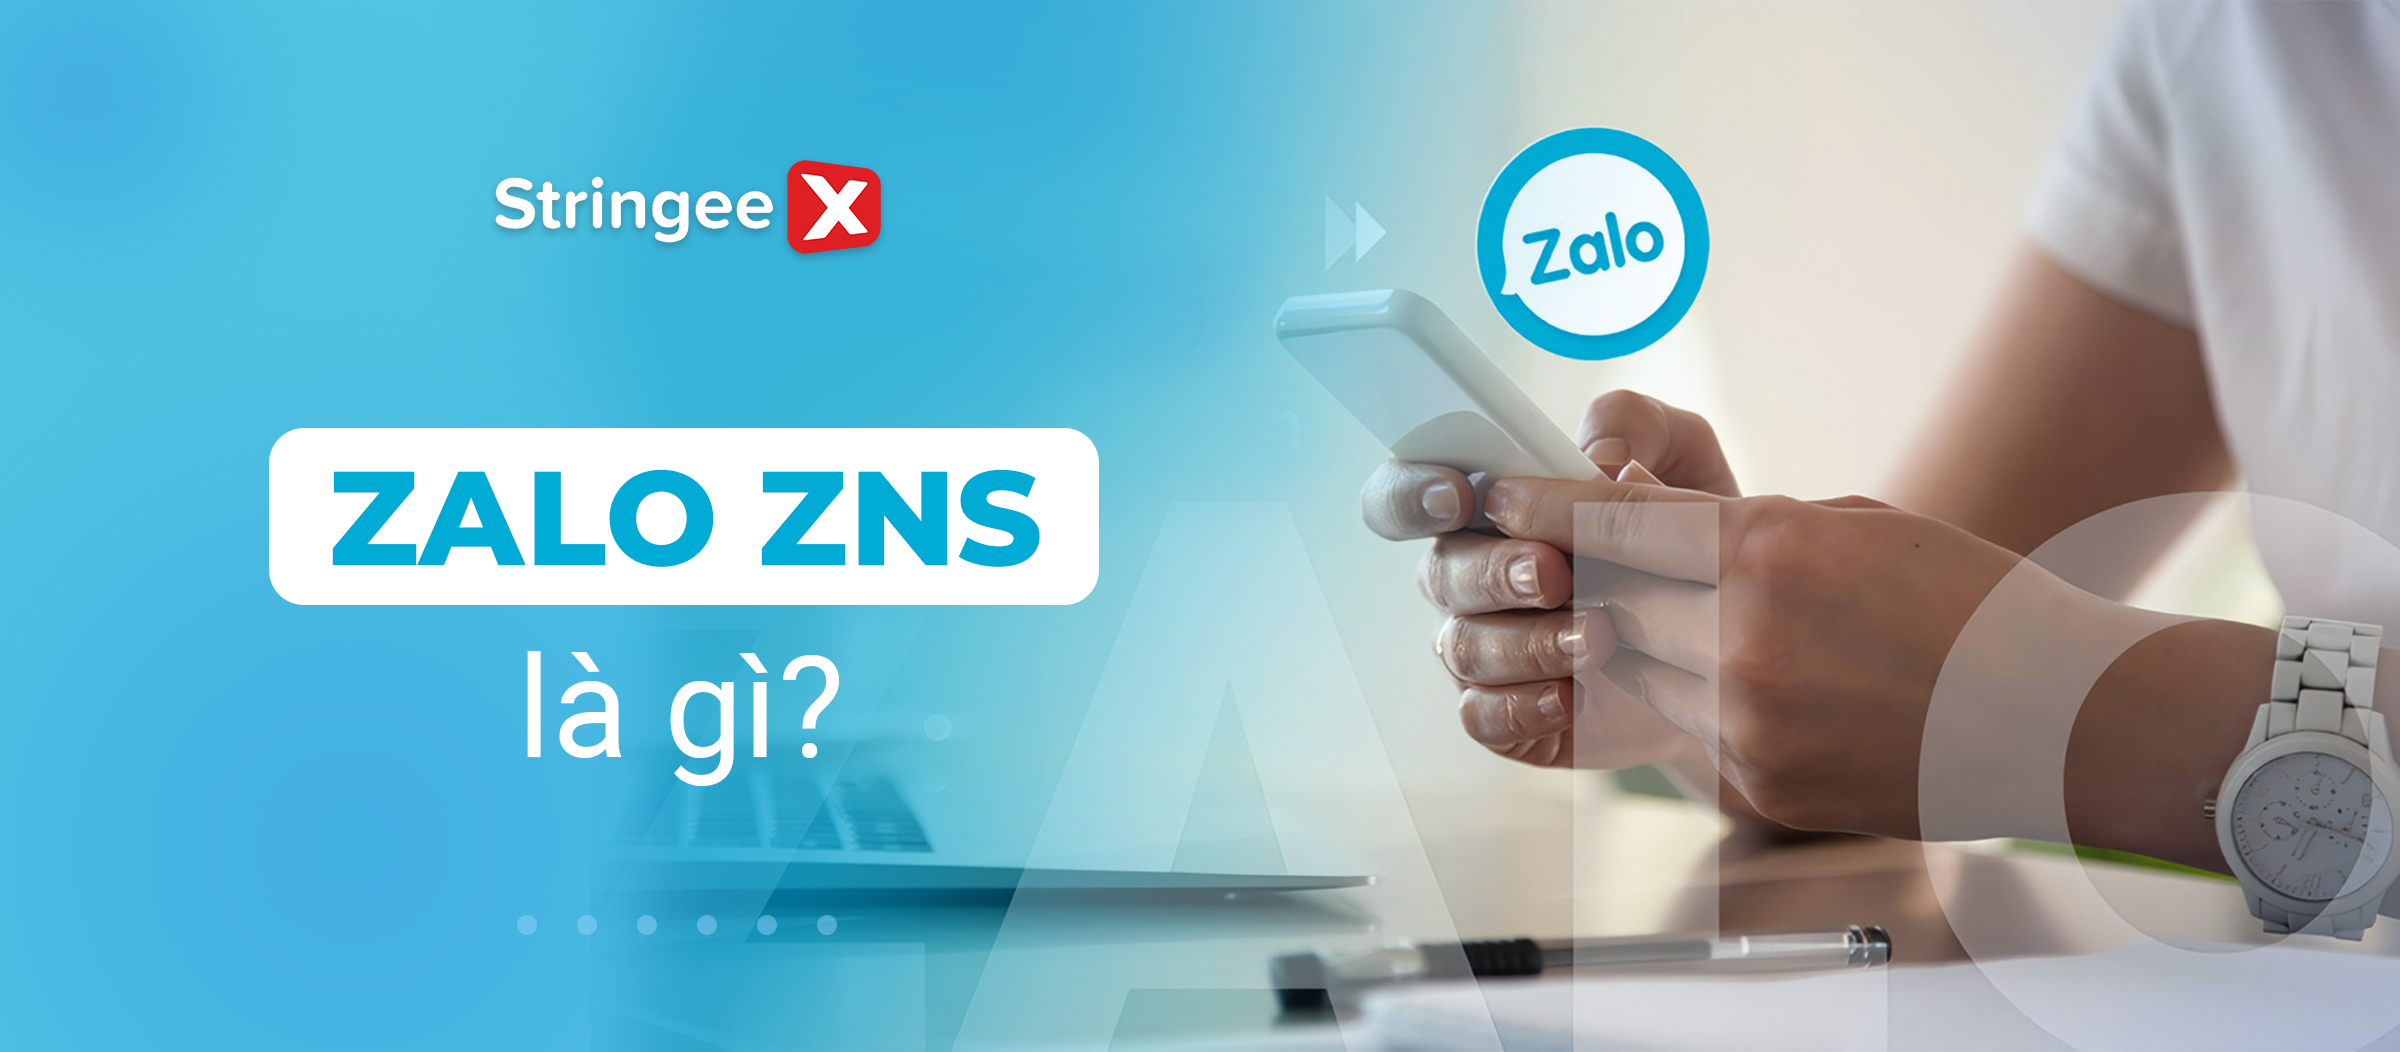 Zalo ZNS là gì? Khám phá giải pháp chăm sóc khách hàng trực tuyến từ Zalo